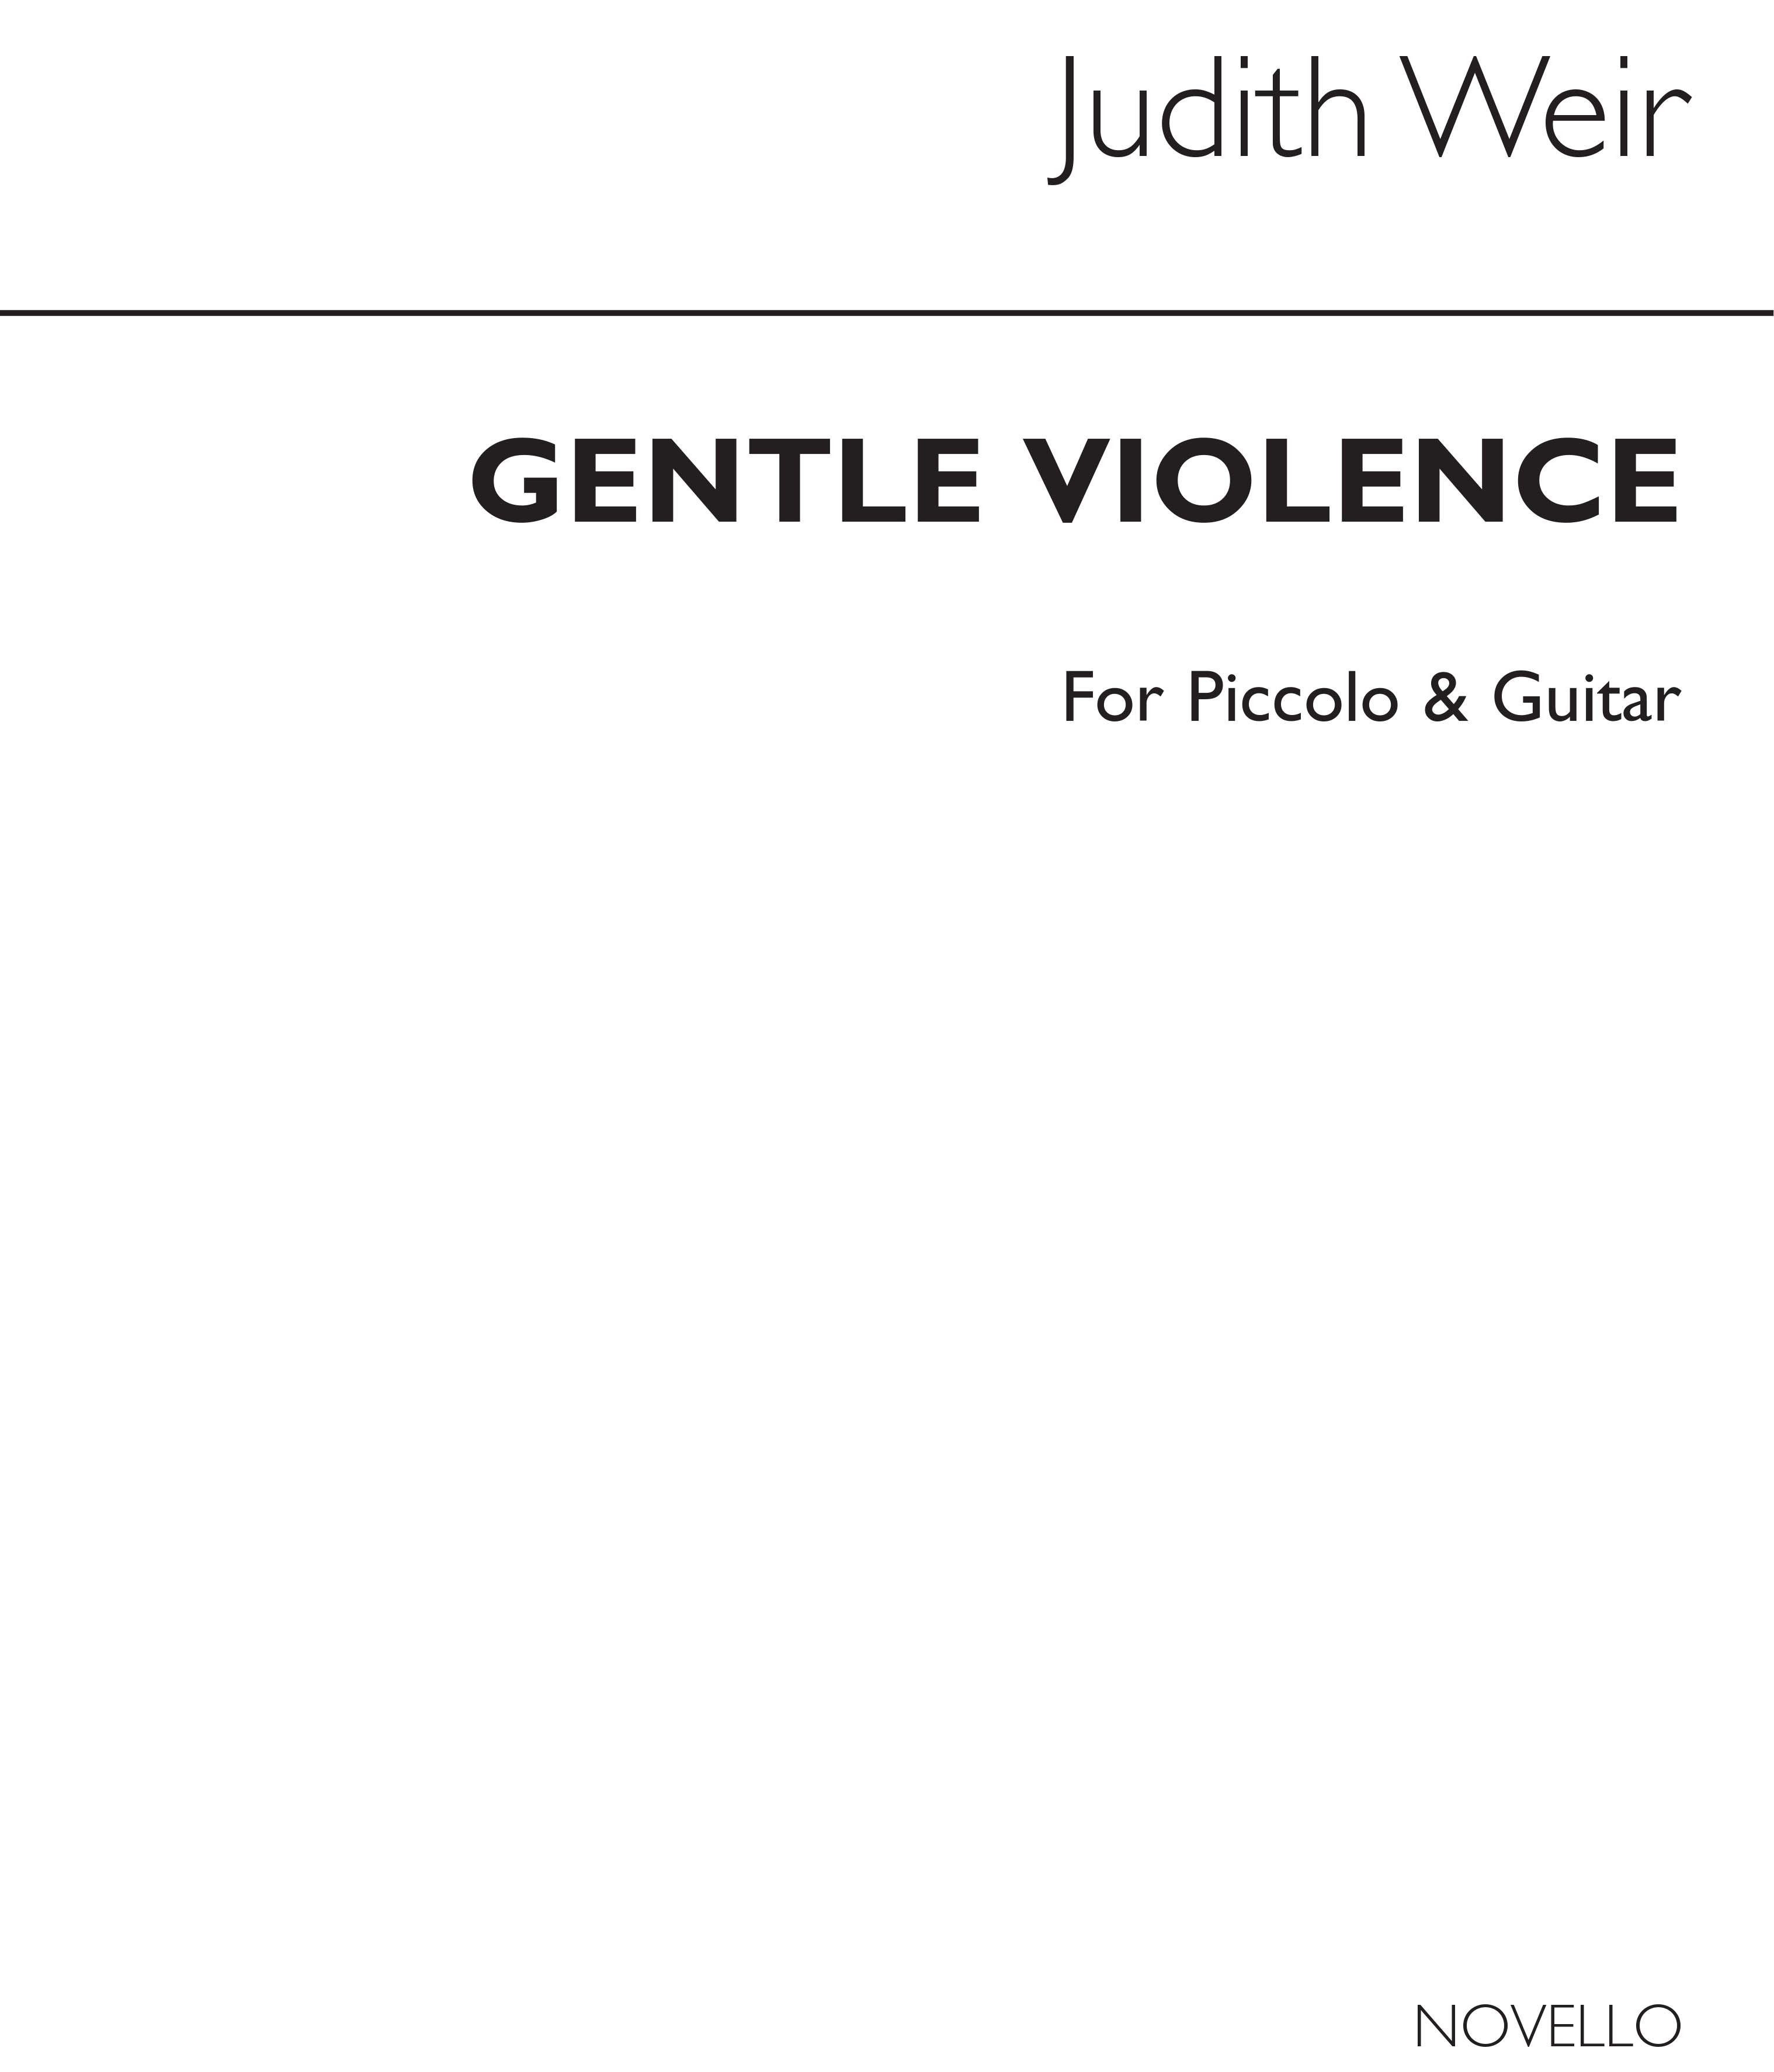 Judith Weir: Gentle Violence